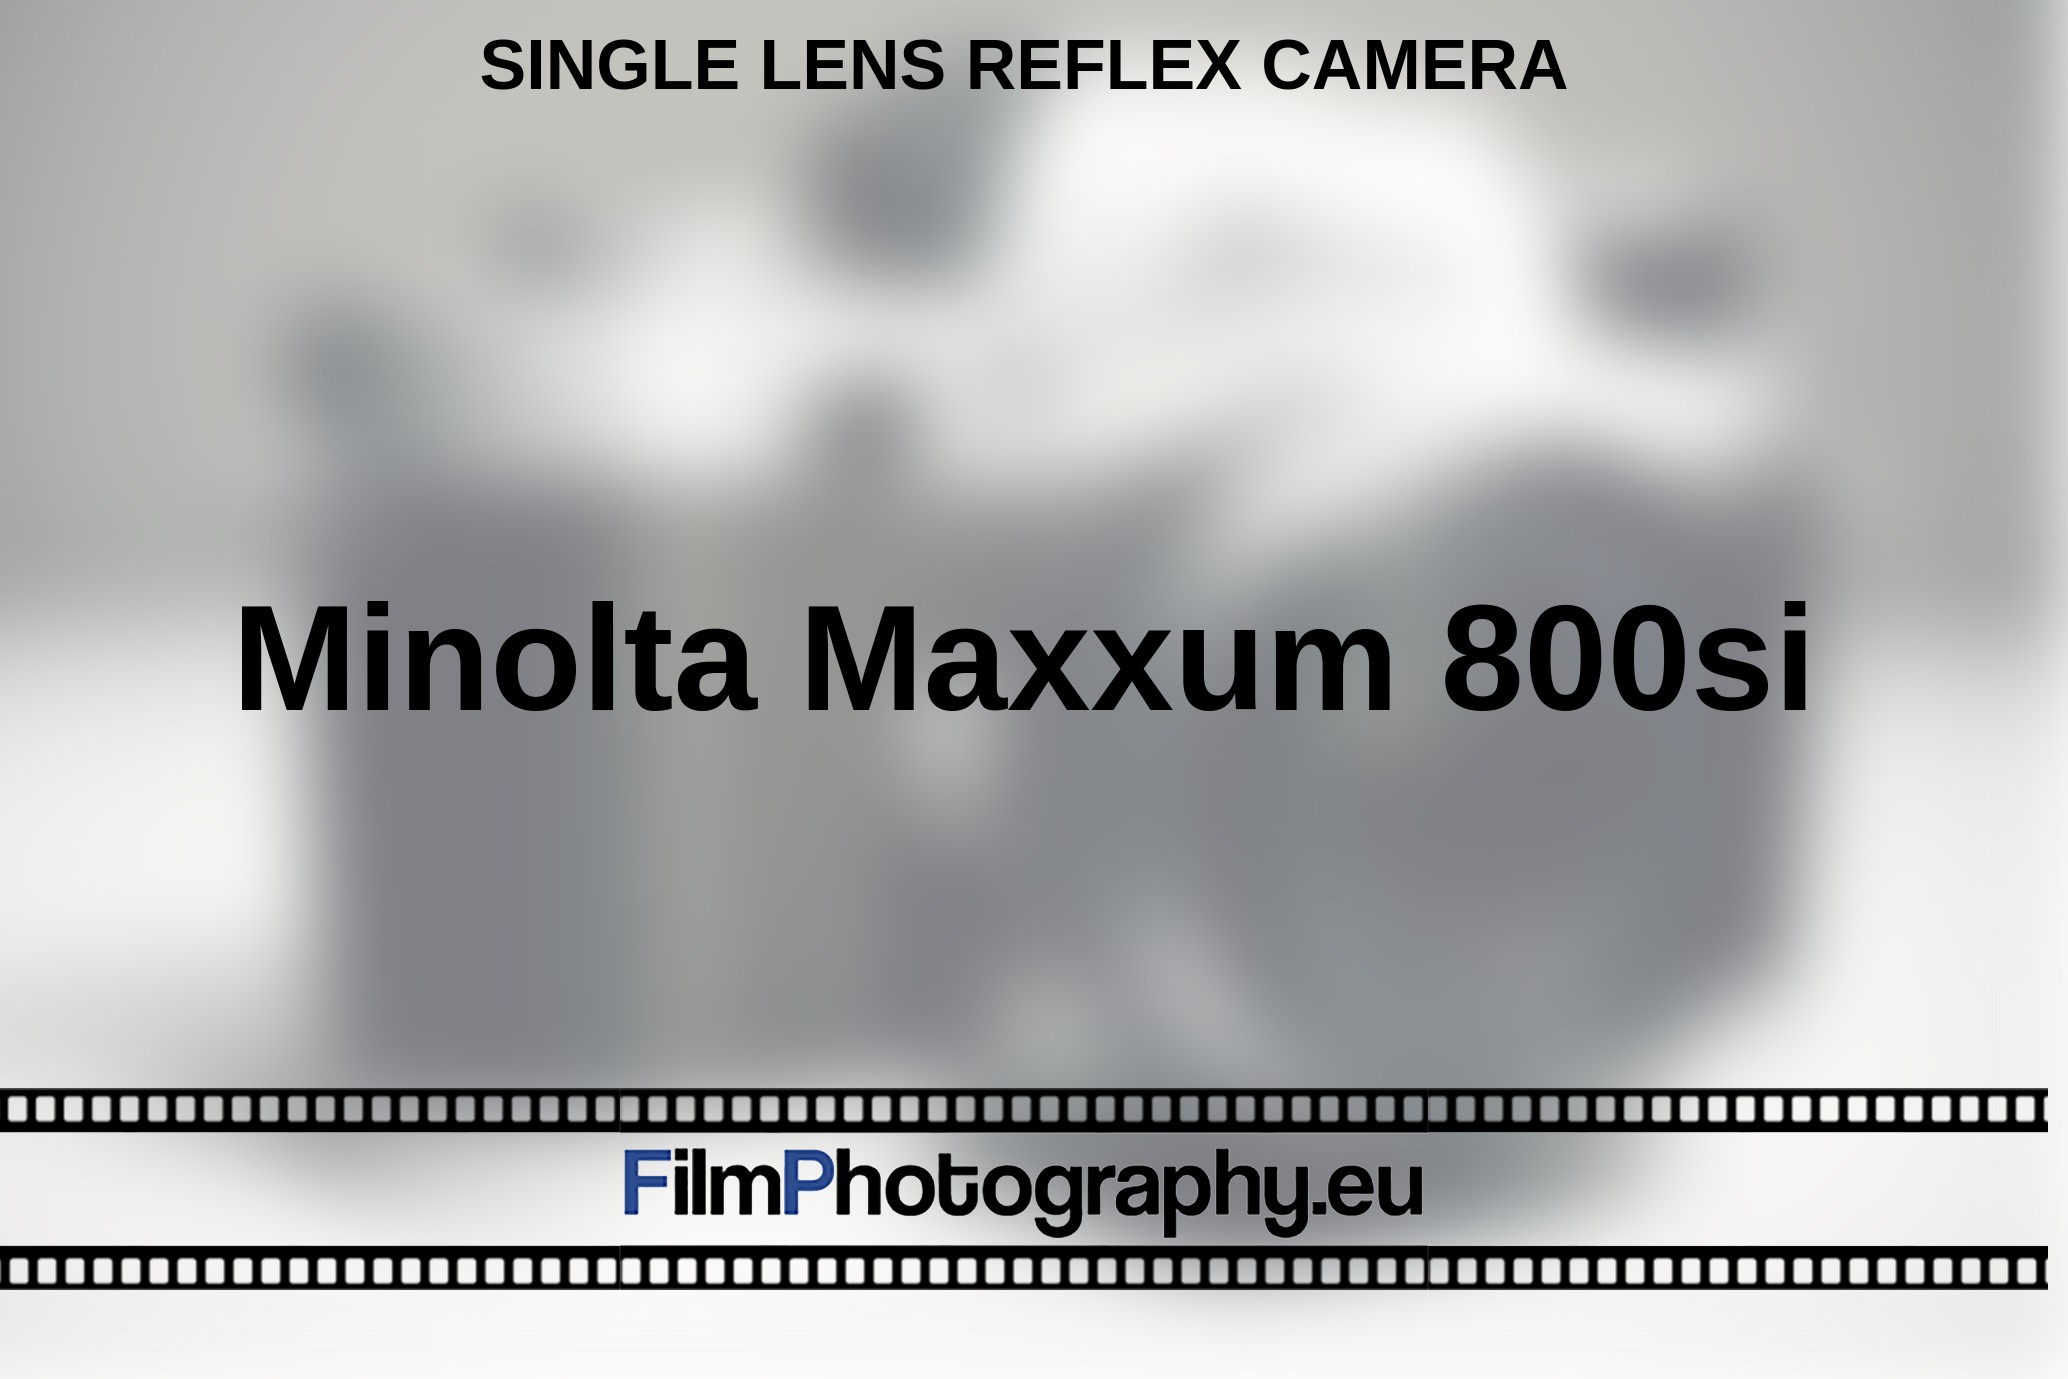 Minolta-Maxxum-800si-single-lens-reflex-camera-bnv.jpg